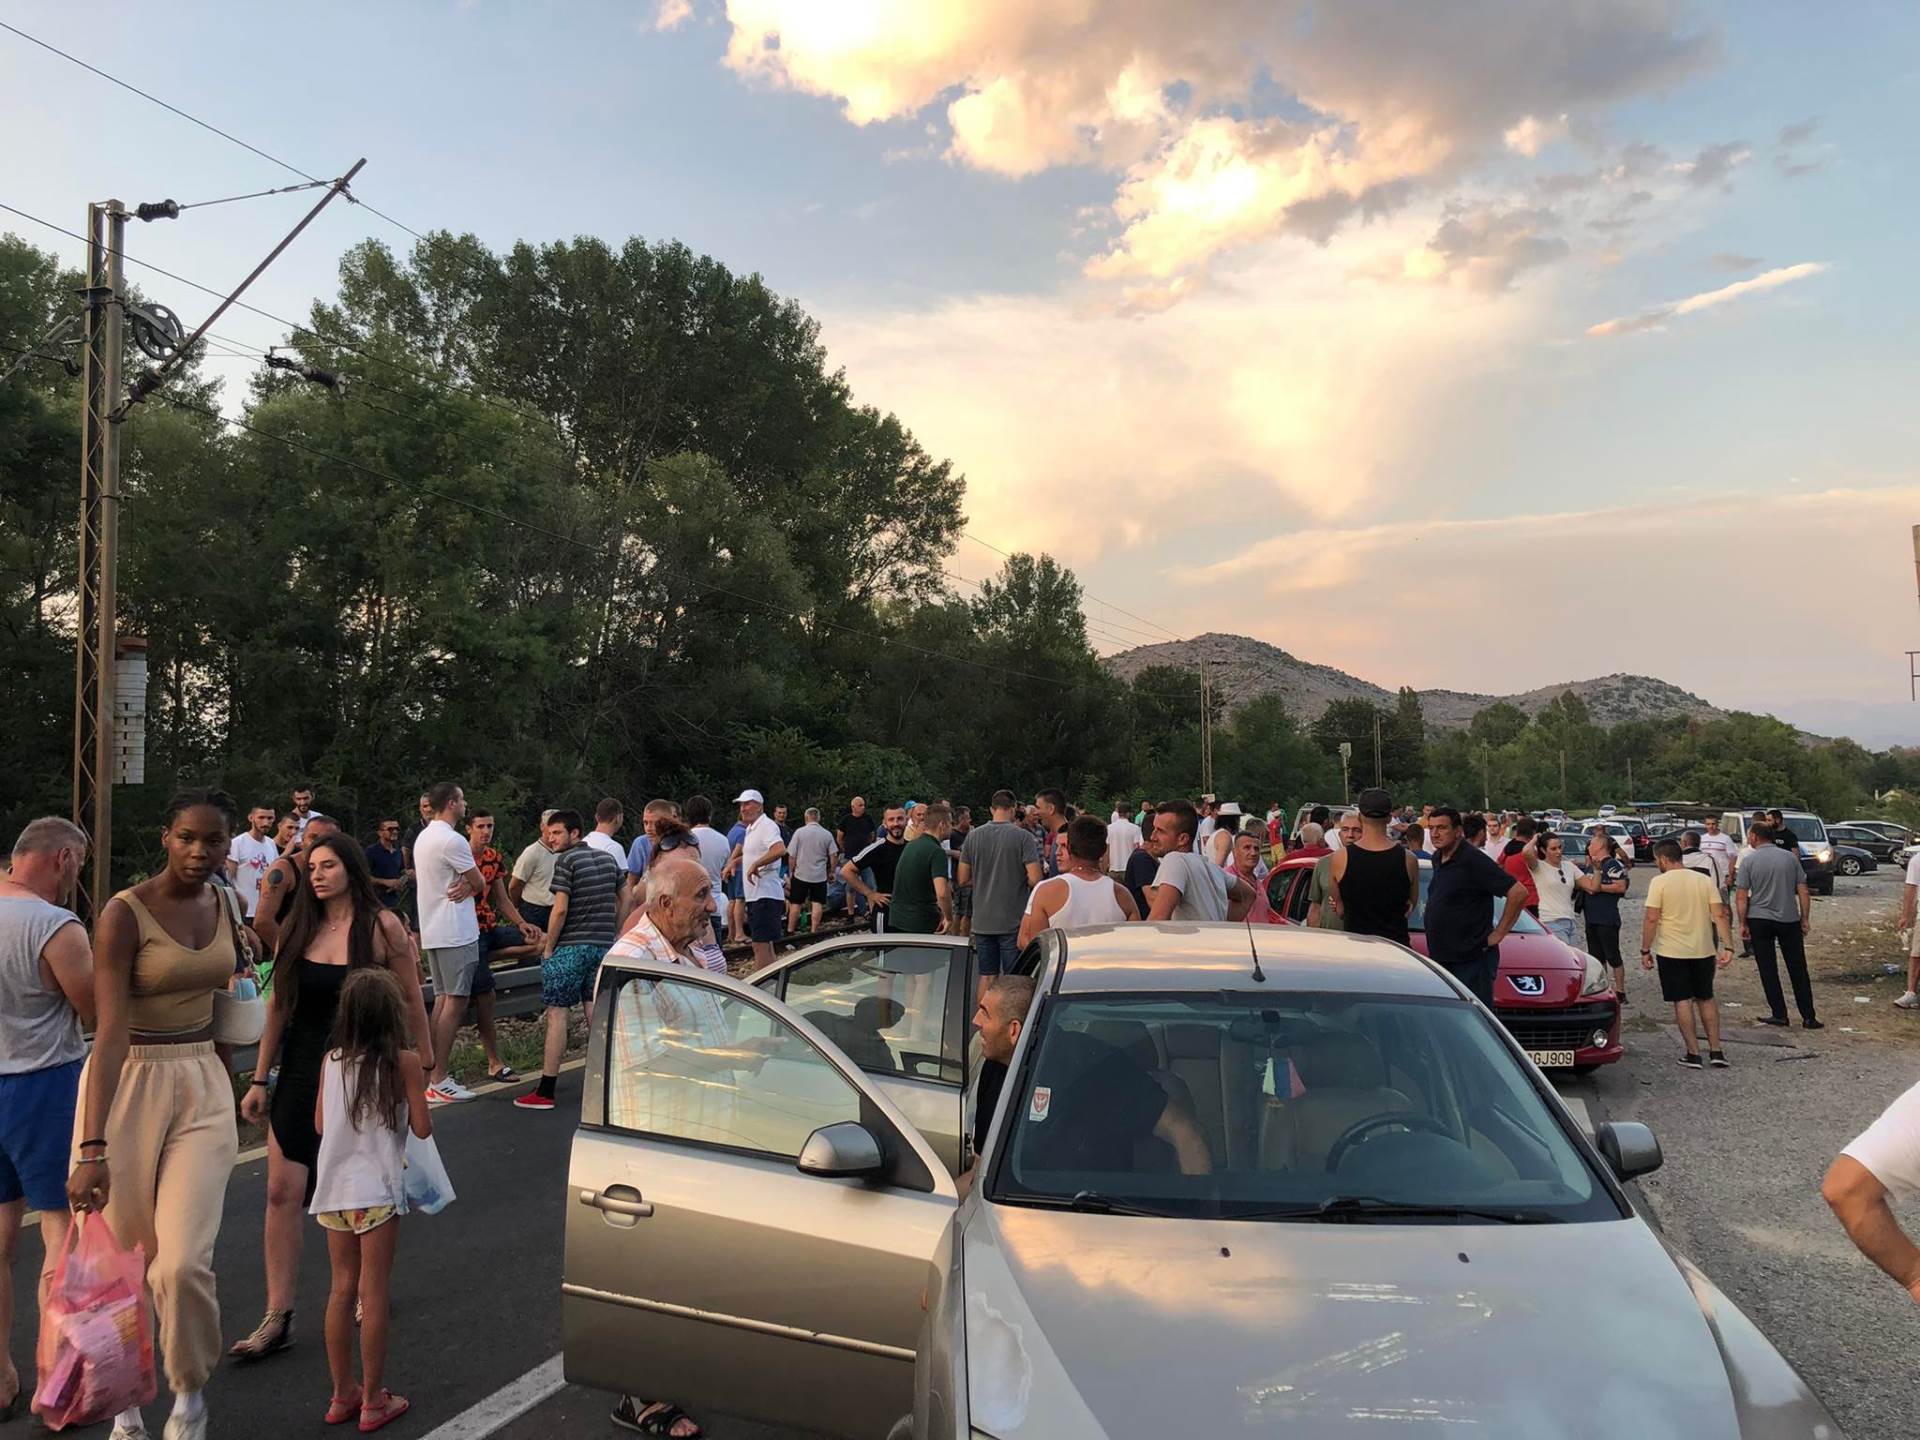  grupa građana blokirala magistralni put u Crnoj Gori 